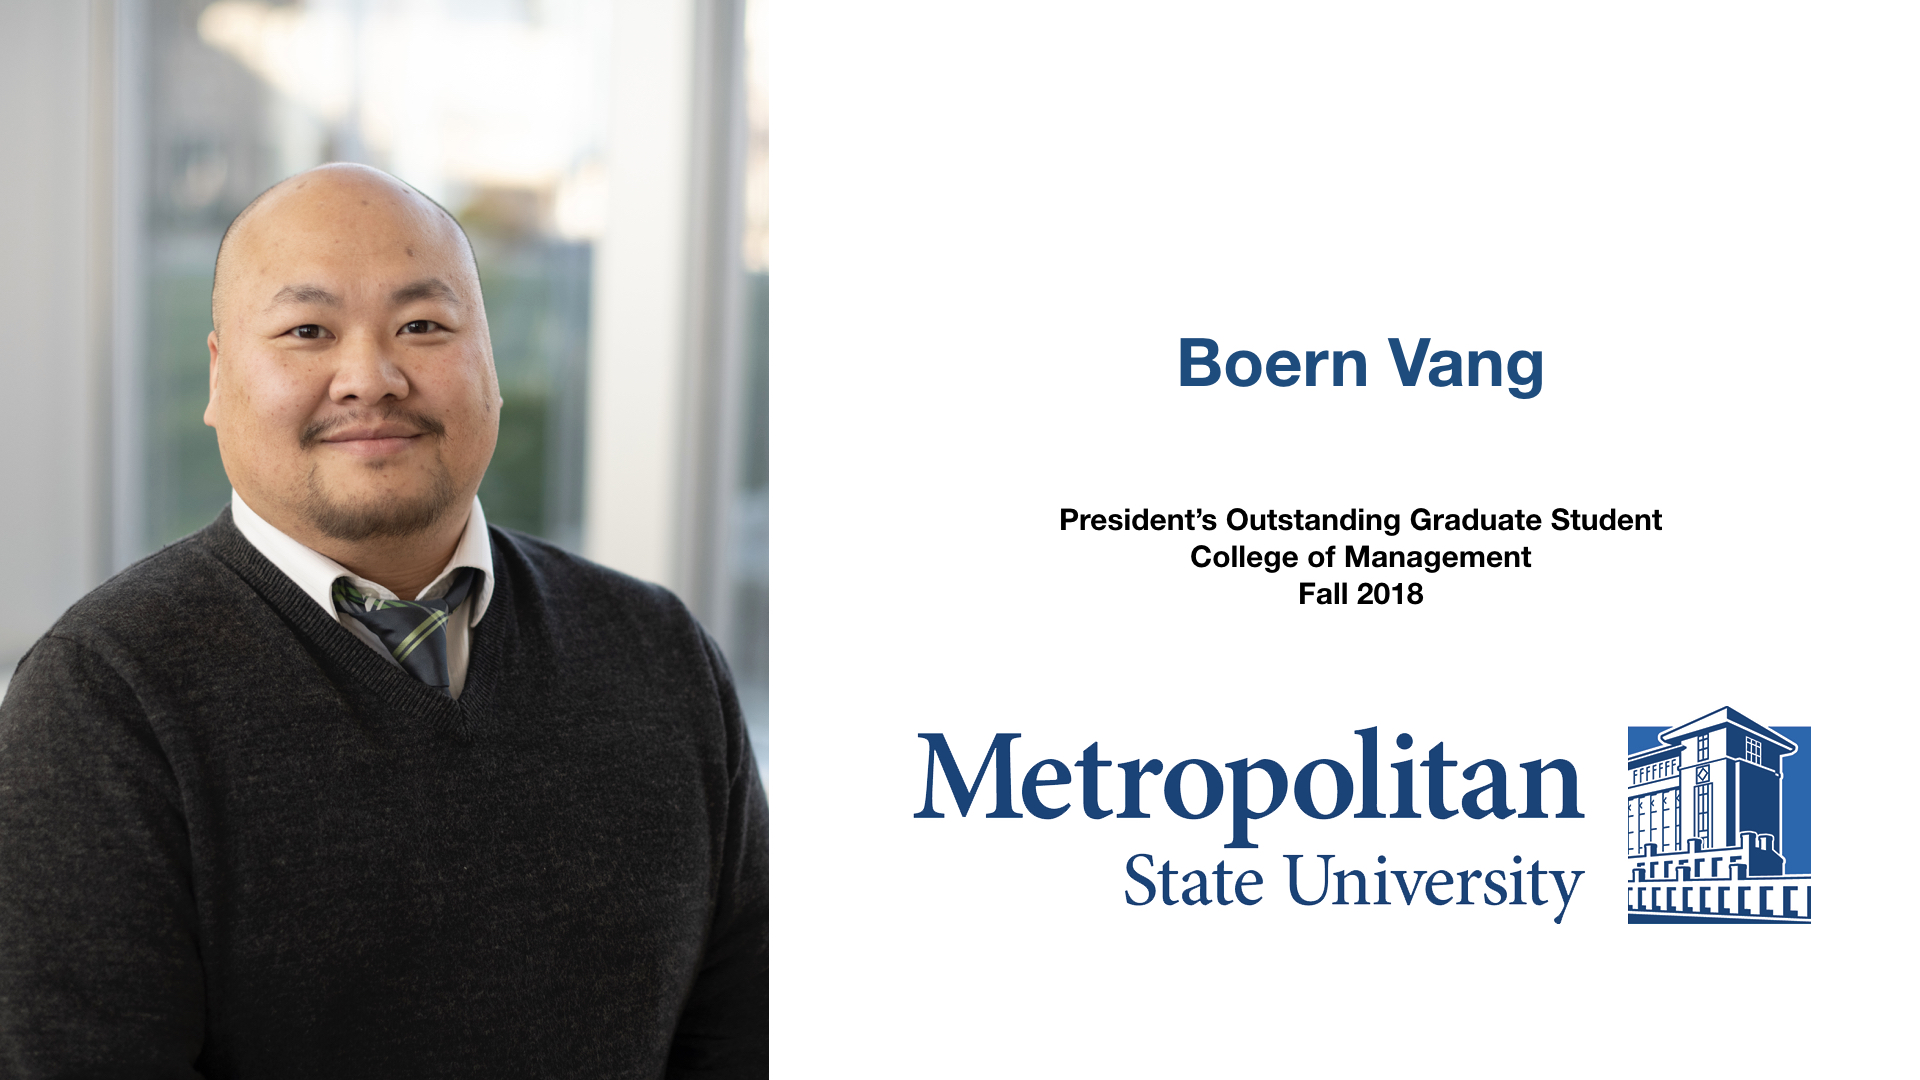 Boern Vang Outstanding Graduate Student